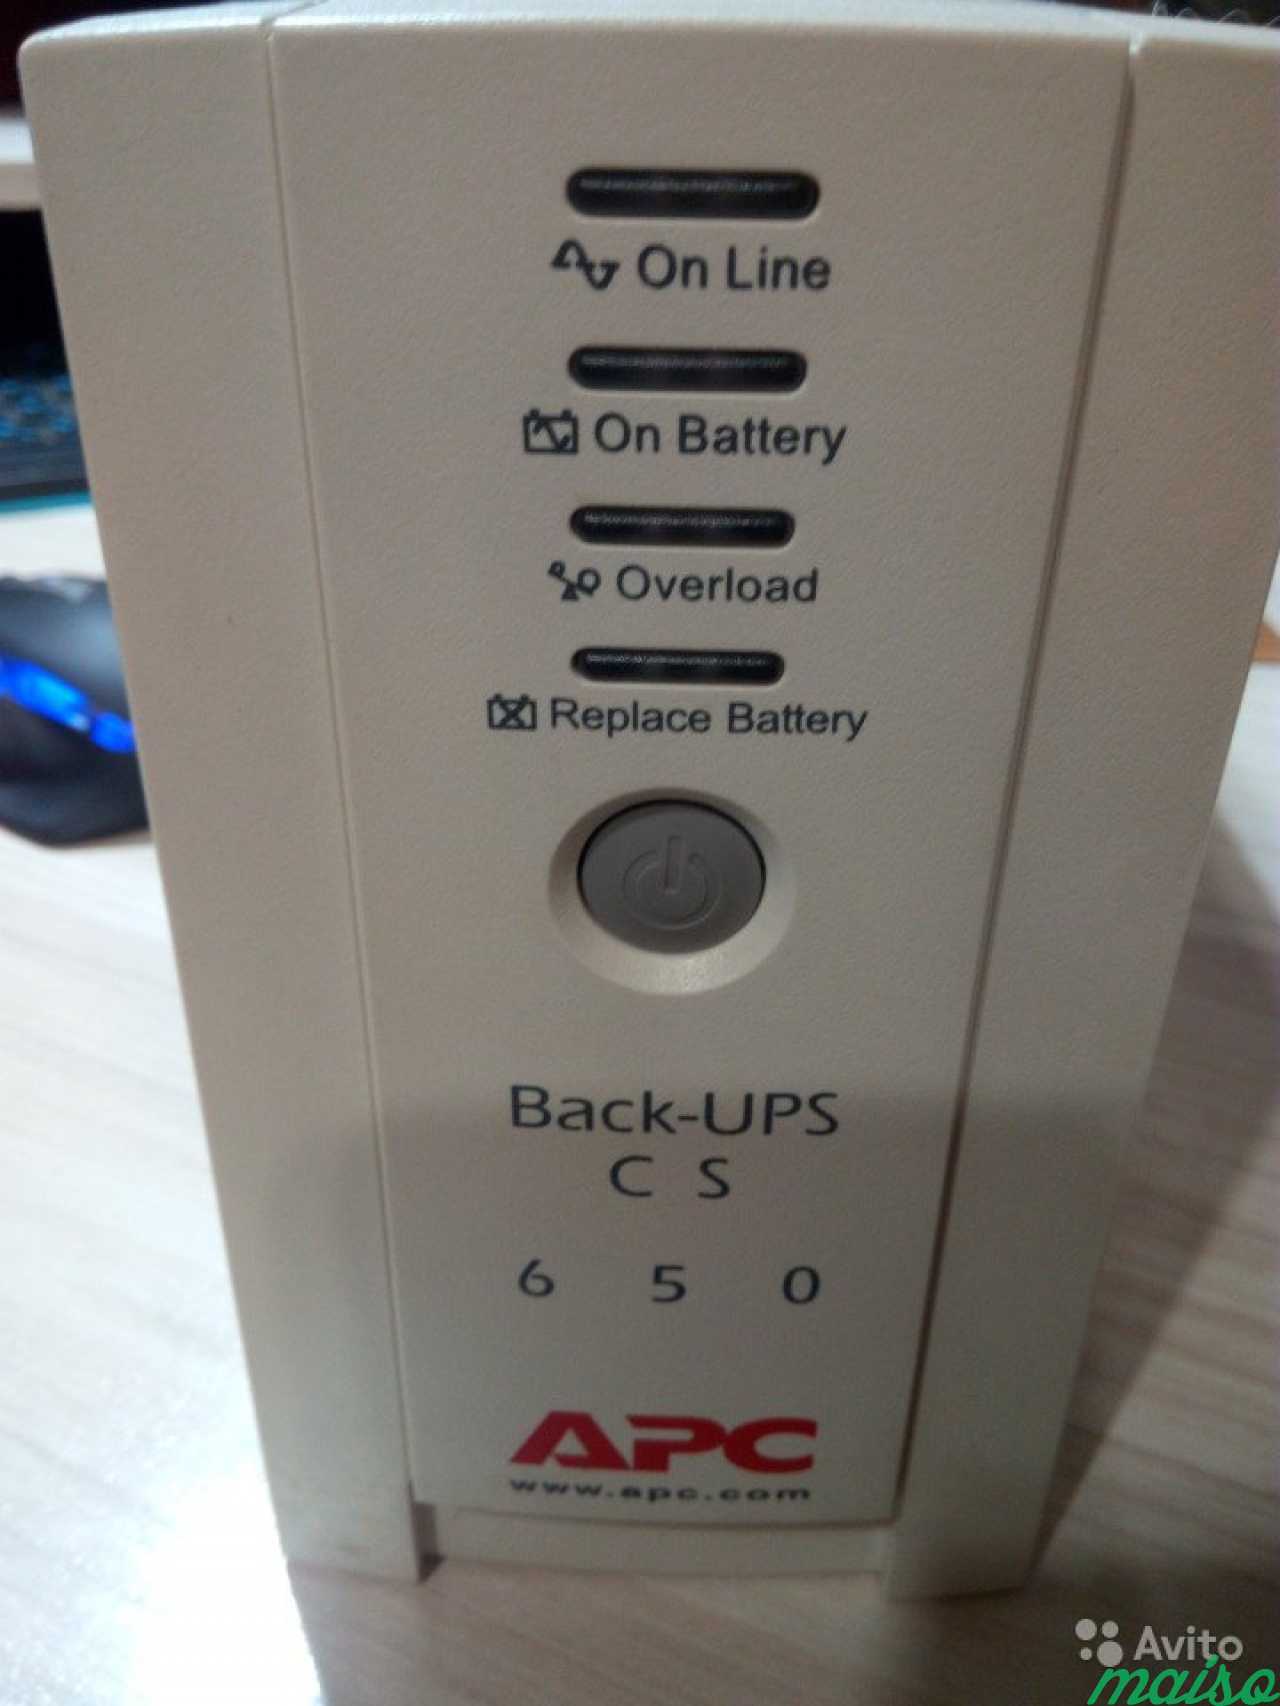 APC back-ups CS 650. Back ups CS 650. Ups cs 650